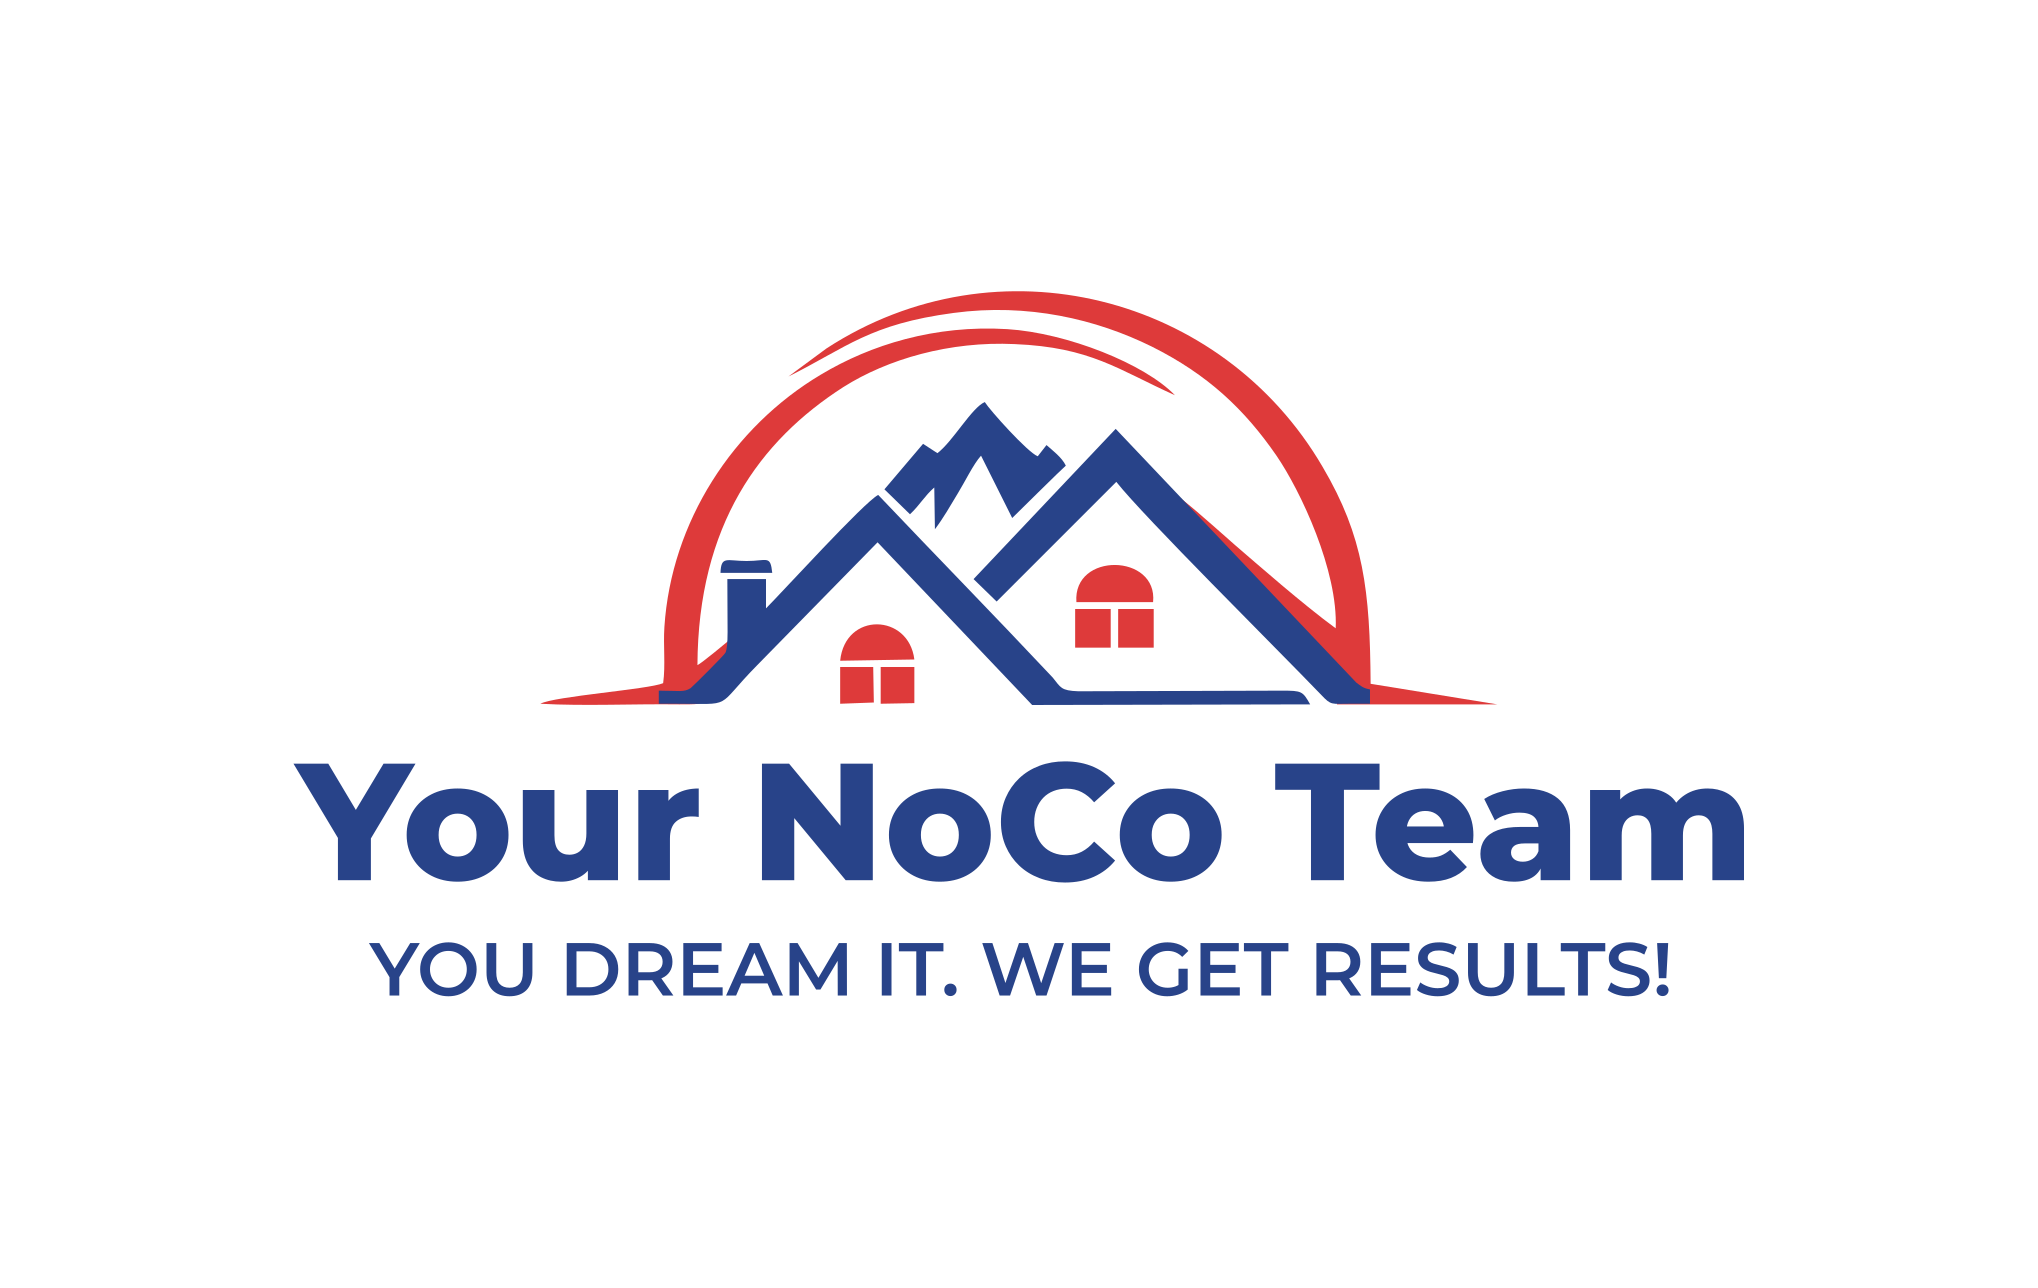 Your NoCo Team